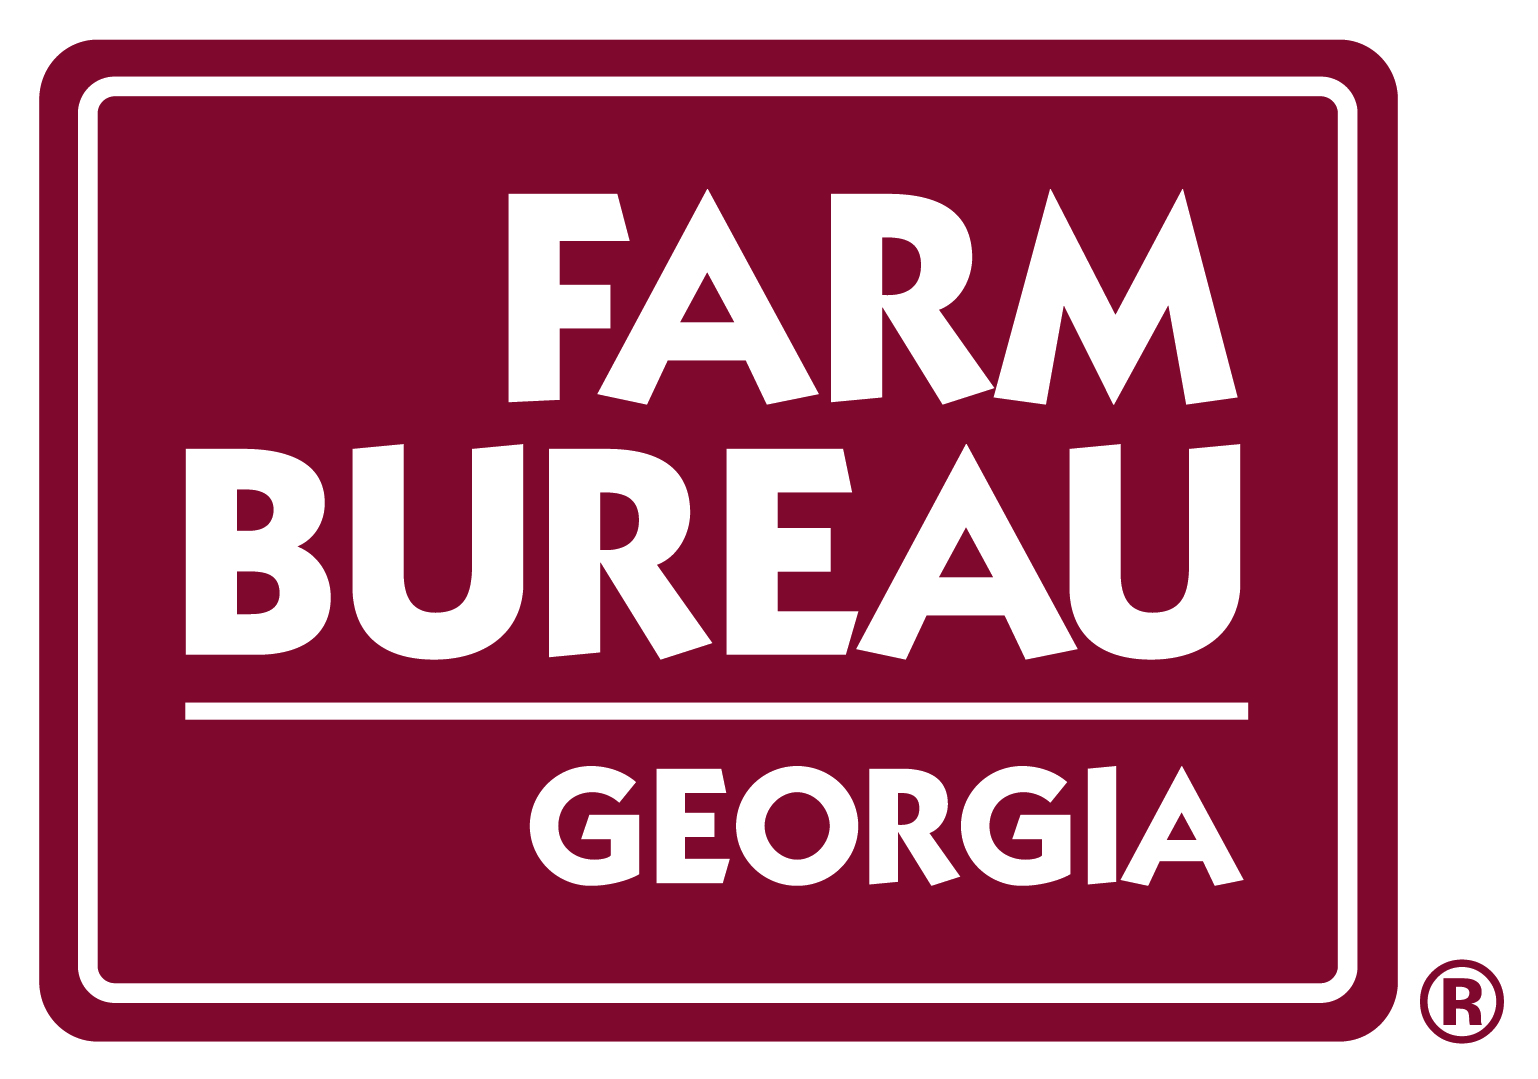 Farm Bureau Georgia